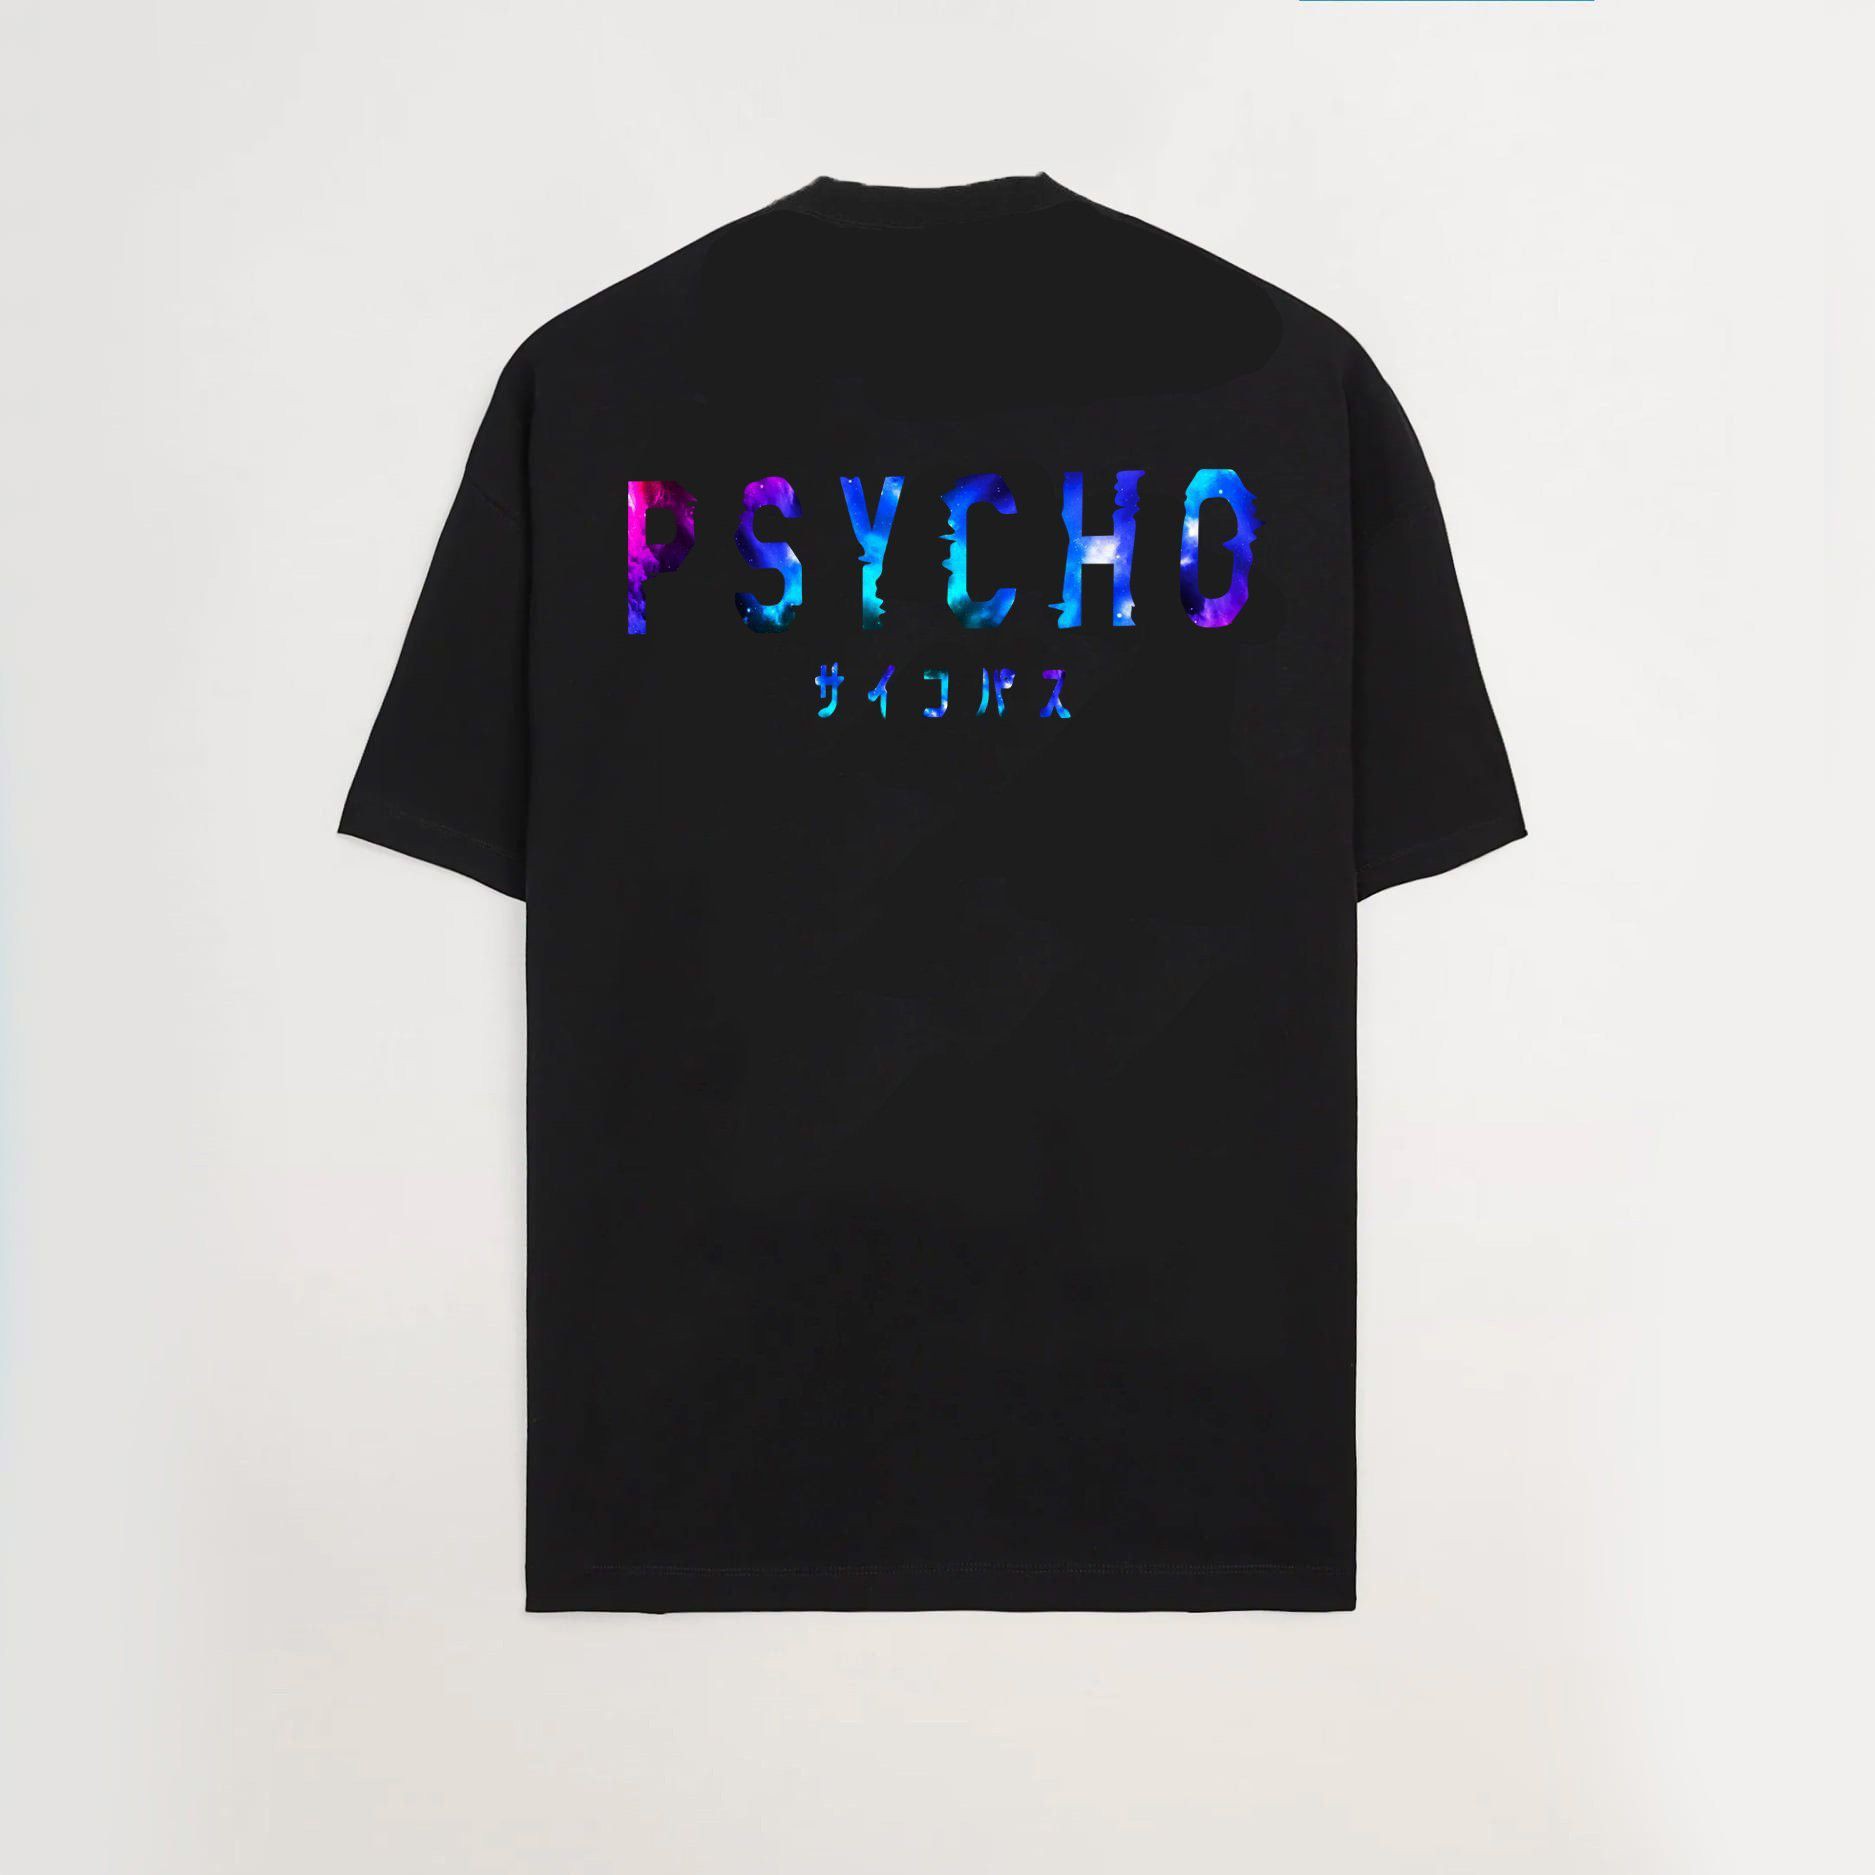 Áo thun Oversize Psycho Galaxy, áo phông T shirt nam nữ unisex, Odin Clothing